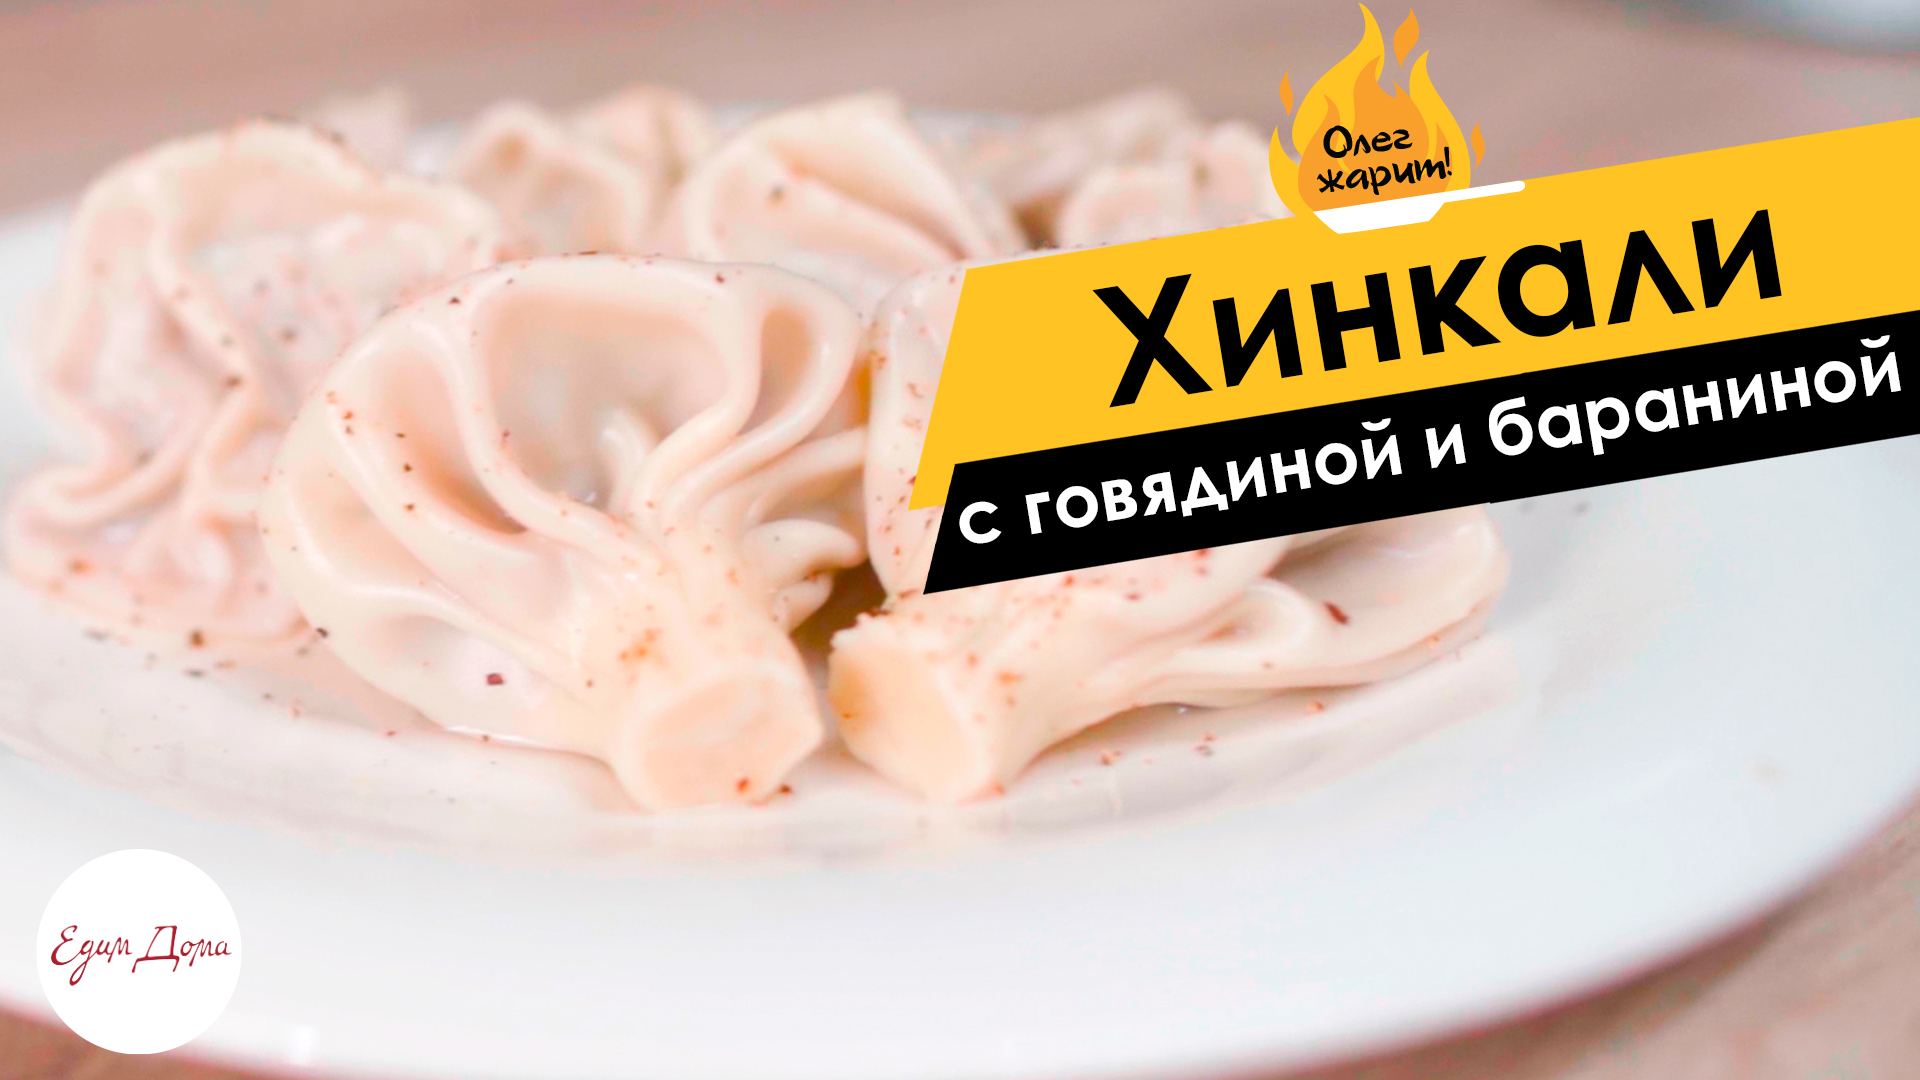 Хинкали с говядиной и бараниной — самое вкусное блюдо грузинской кухни ? ОЛЕГ ЖАРИТ!